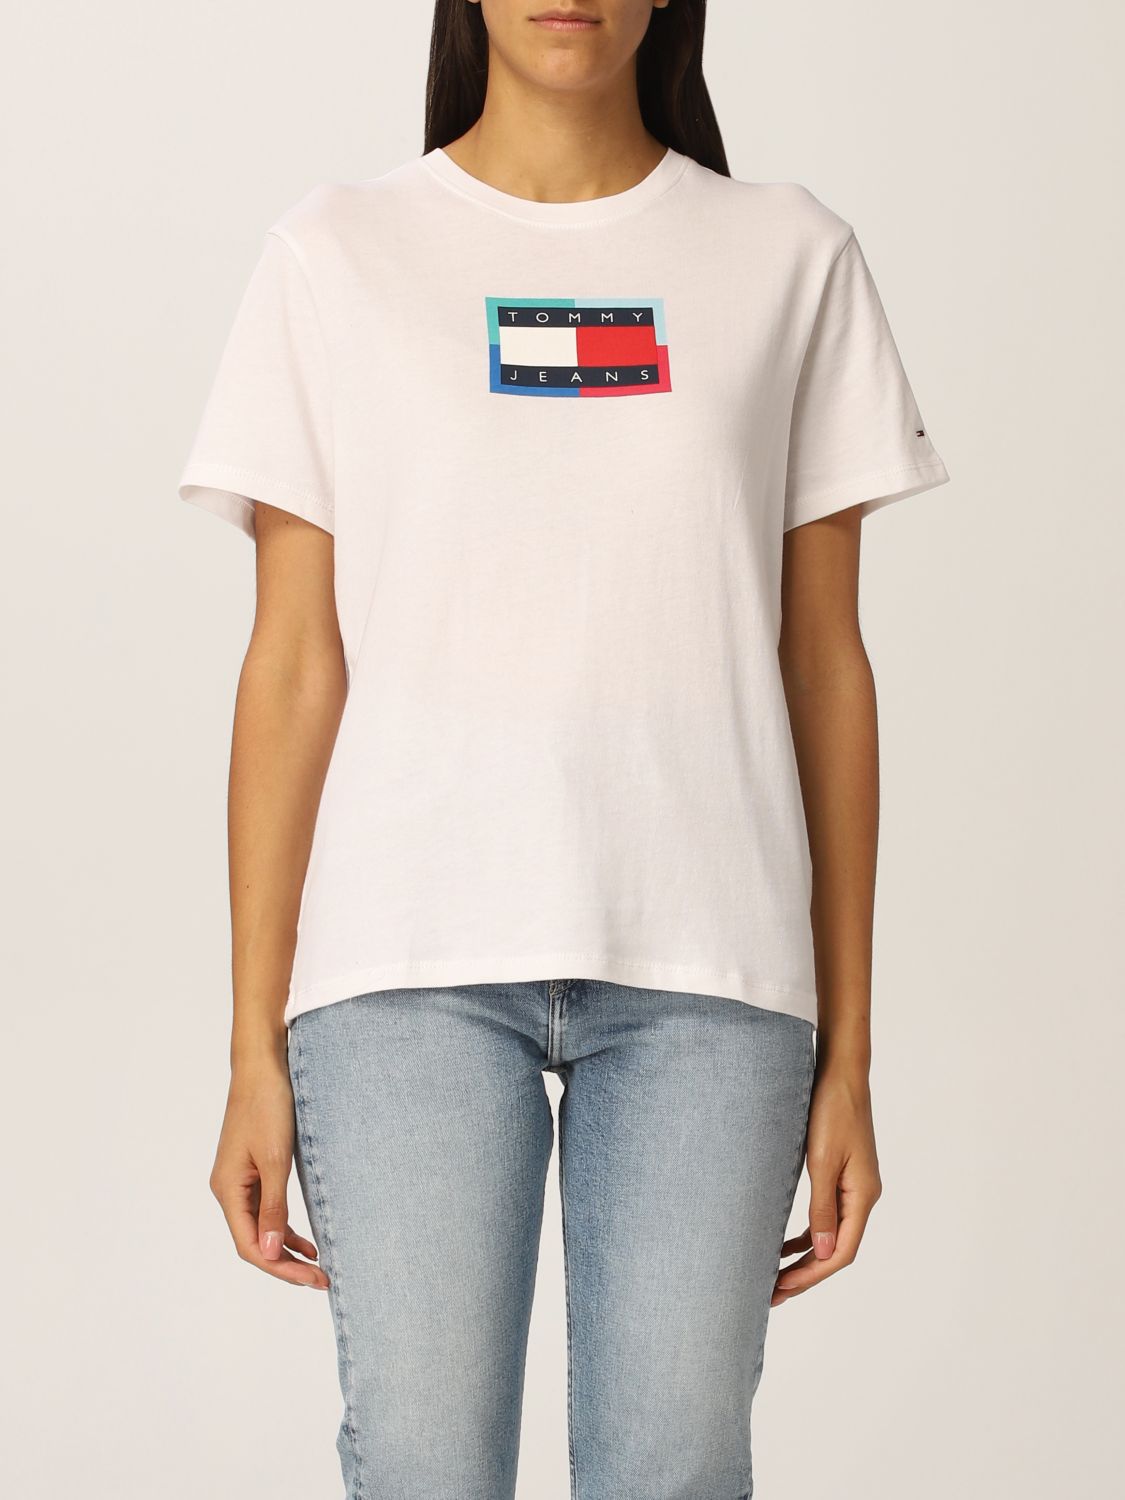 TOMMY HILFIGER: T-shirt women | T-Shirt Hilfiger Women White | Hilfiger DW0DW10434 GIGLIO.COM